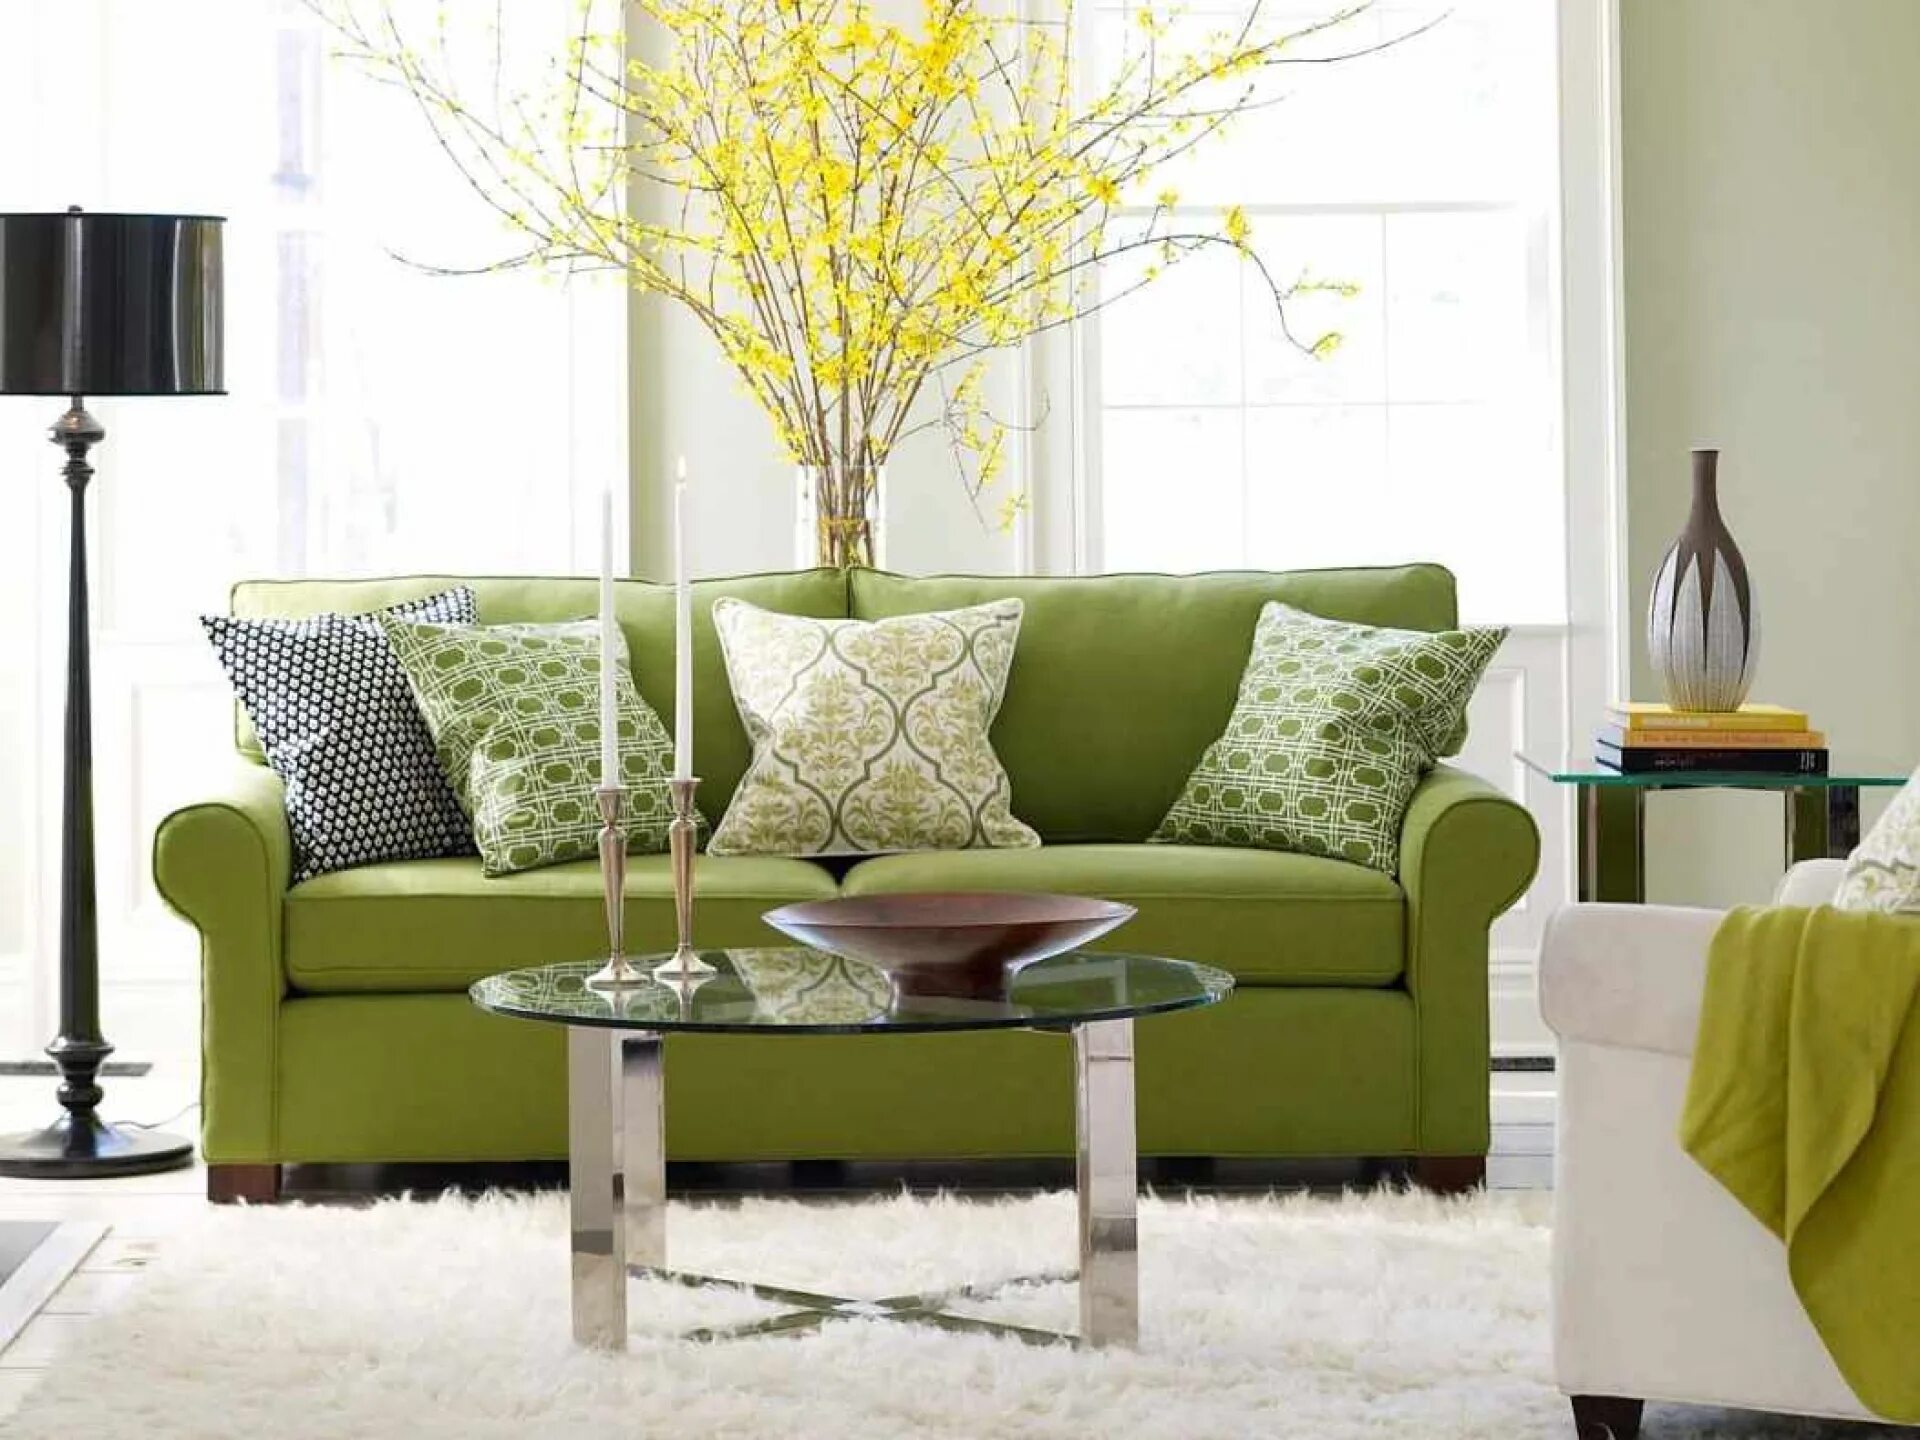 Цвет диванов в интерьере гостиной. Салатовый диван в интерьере. Гостиная в зеленых тонах. Зеленый диван в интерьере. Зеленый цвет в интерьере.